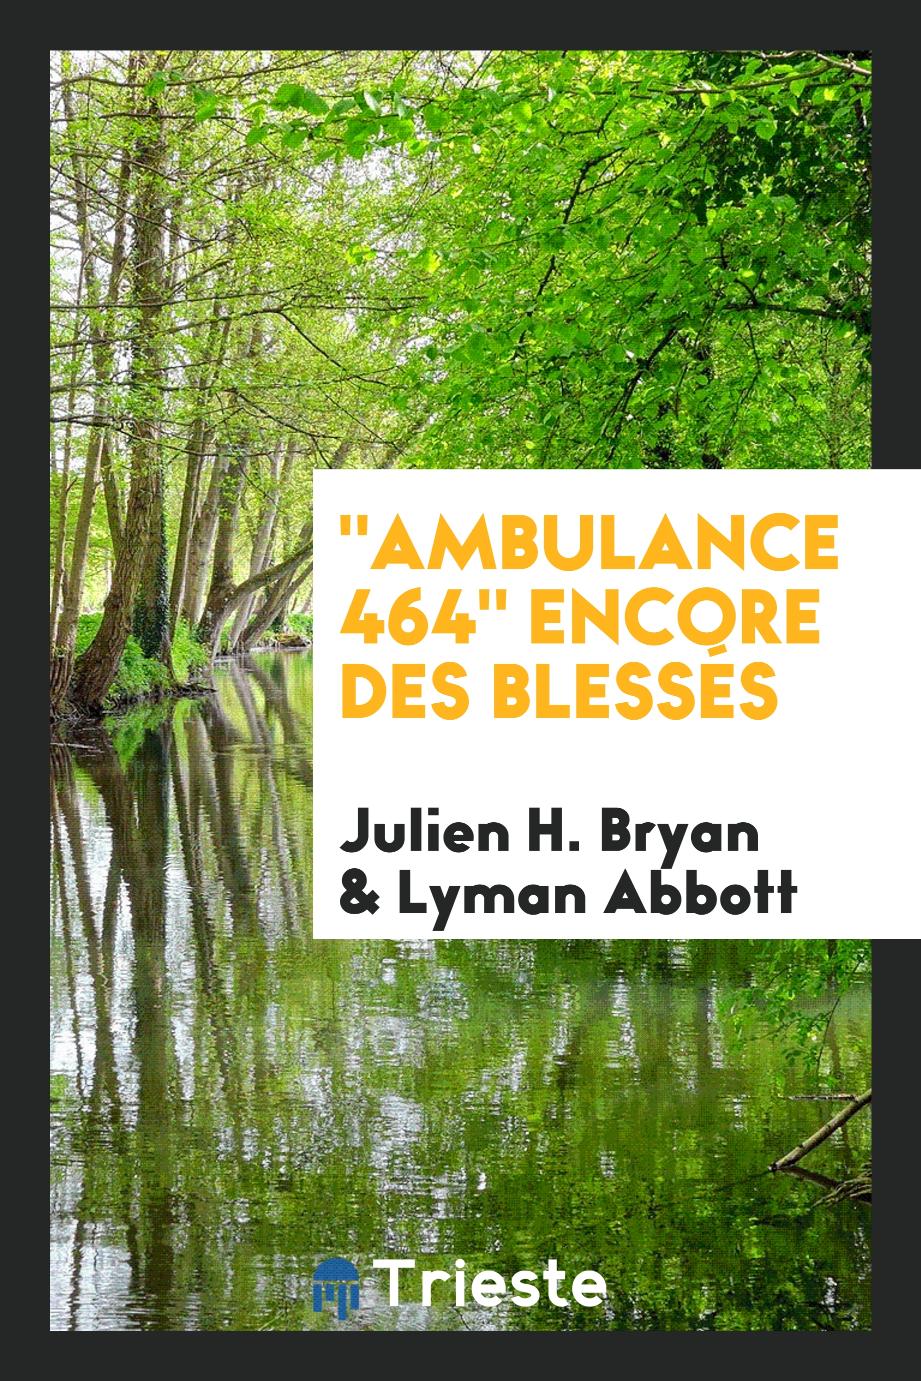 "Ambulance 464" Encore Des Blessés